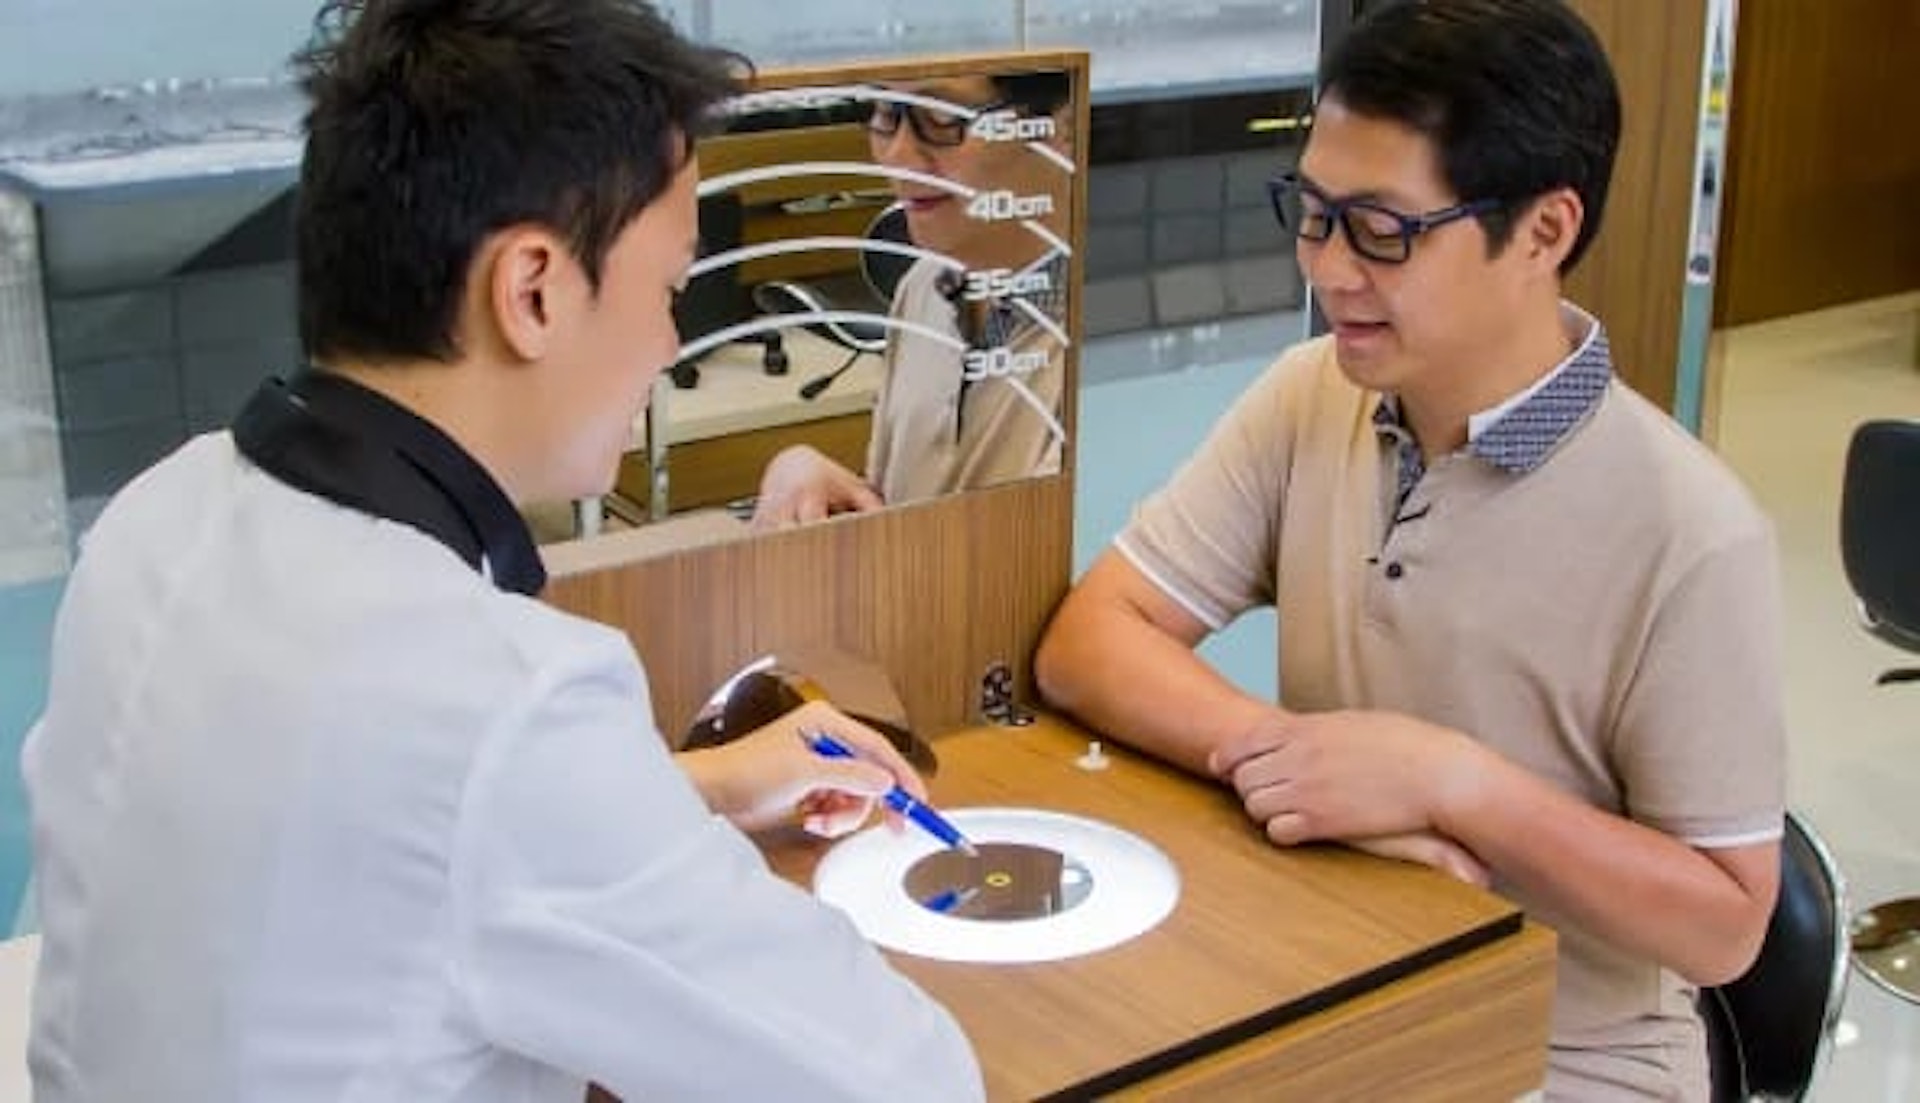 「漸進鏡體驗中心」設專業顧問為客人提供一對一諮詢及驗配服務，他們亦會教授正確佩戴漸進鏡的方法及跟進客人佩戴的效果。